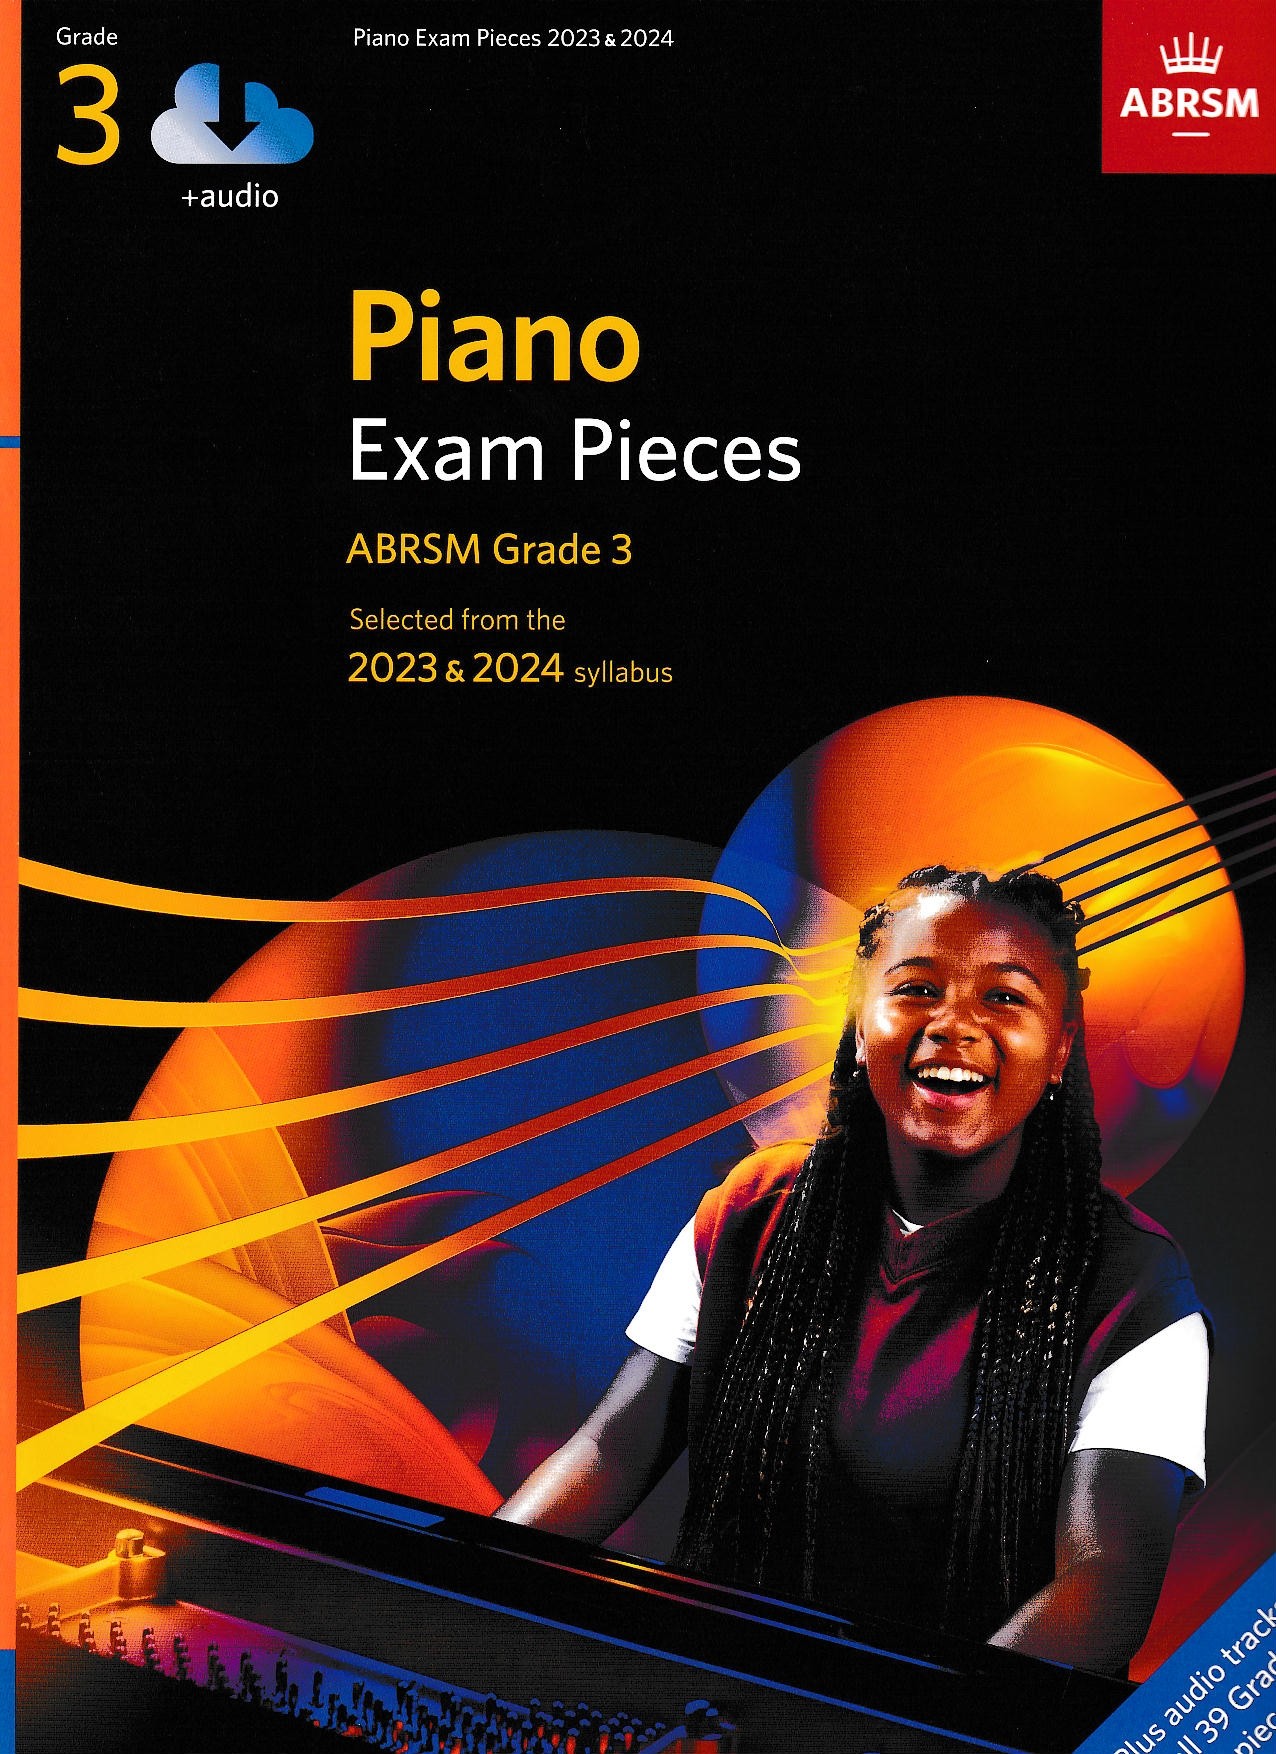 ABRSM Piano Exam Pieces 2023-2024 Book + Audio - Grade 3